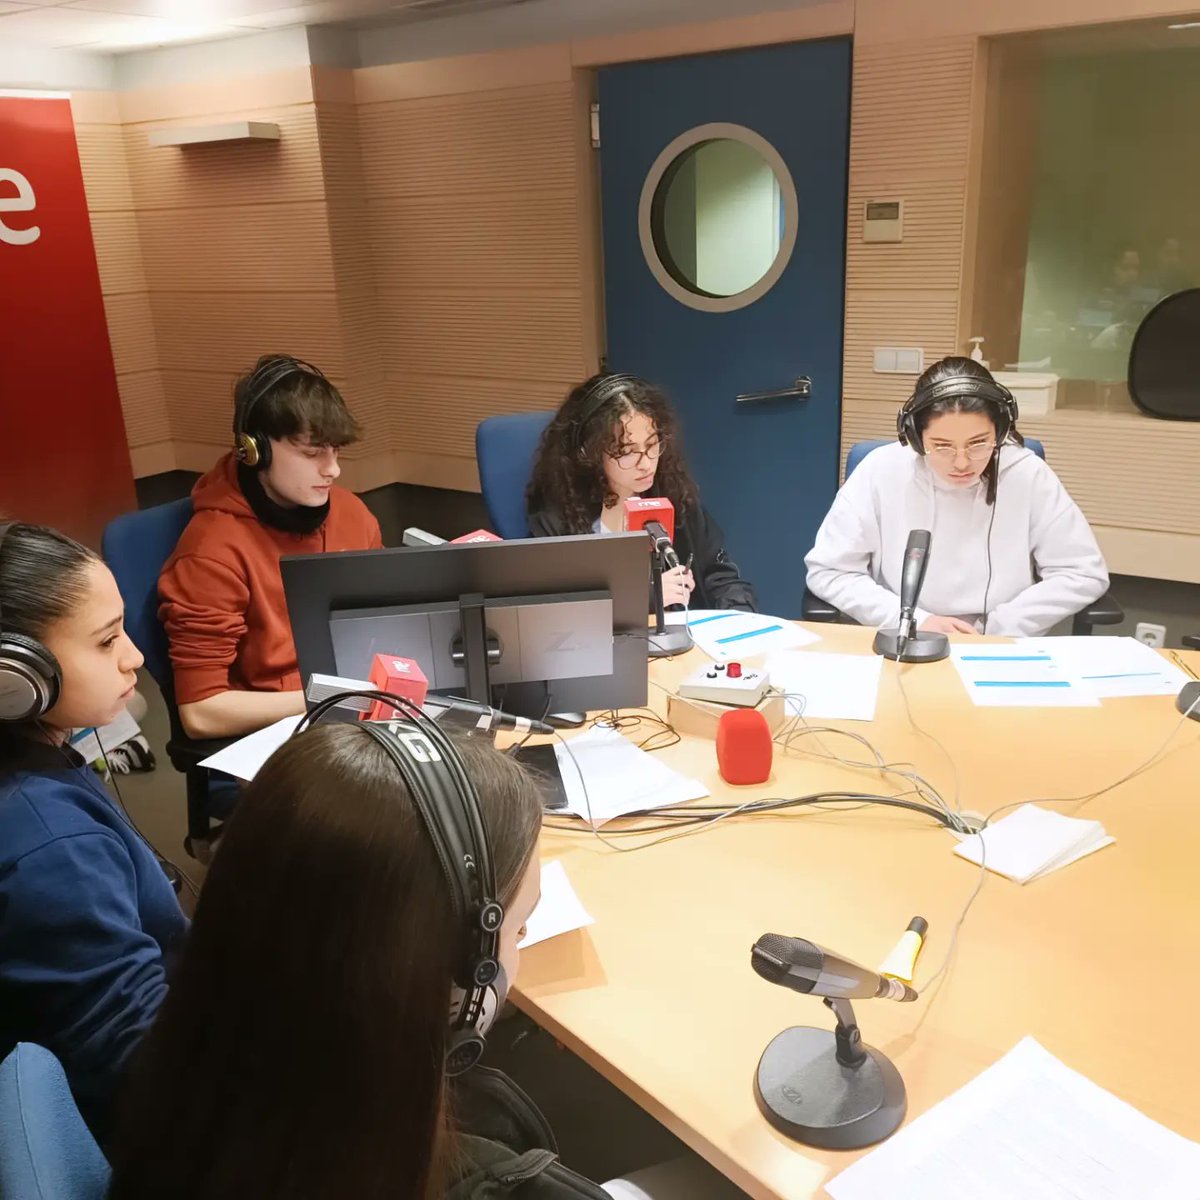 8M a las 13:10, no te pierdas el programa de Red de Radios Escolares de RNE Castilla y León de Alexandra Cermeño: RAyCA RADIO 'Adolescentes y 8M' @rne @RadioEscolarVLL @IESRamonyCajalV